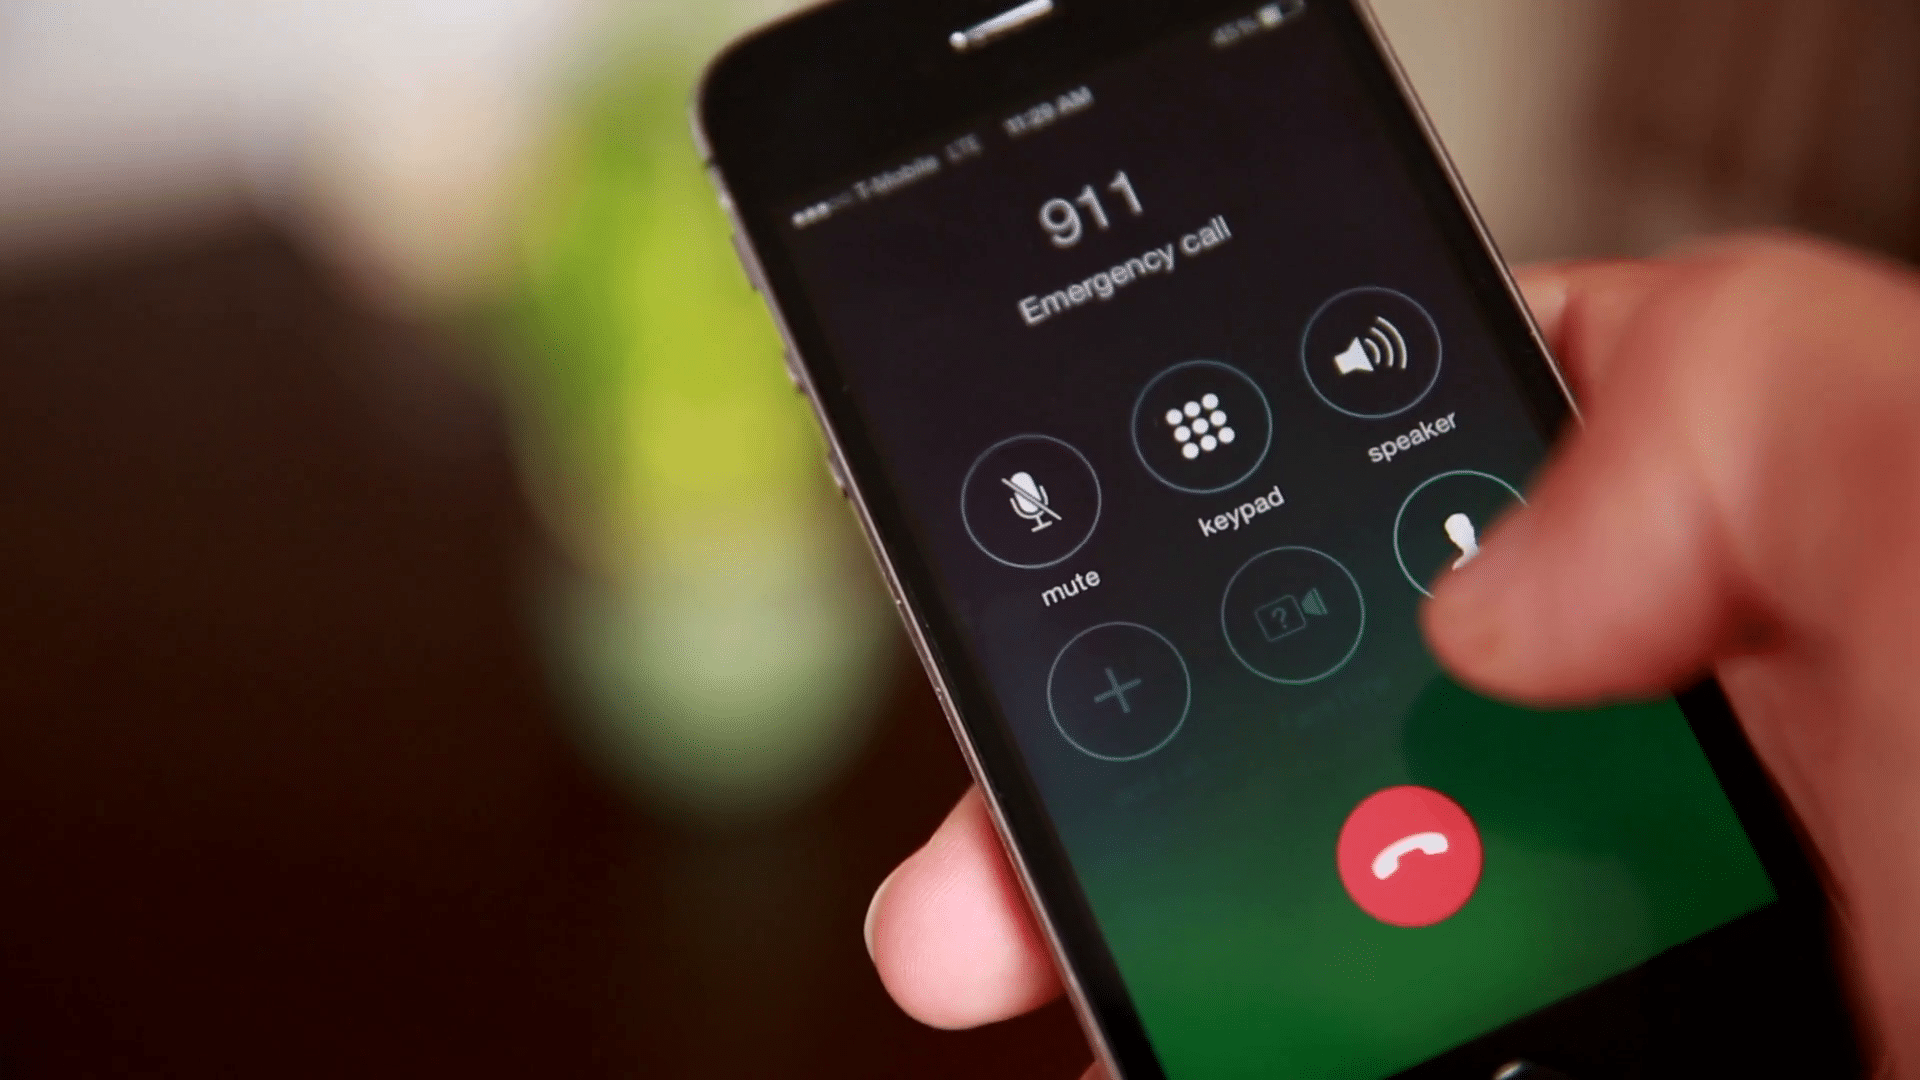 911- Số điện thoại khẩn cấp tại Mỹ